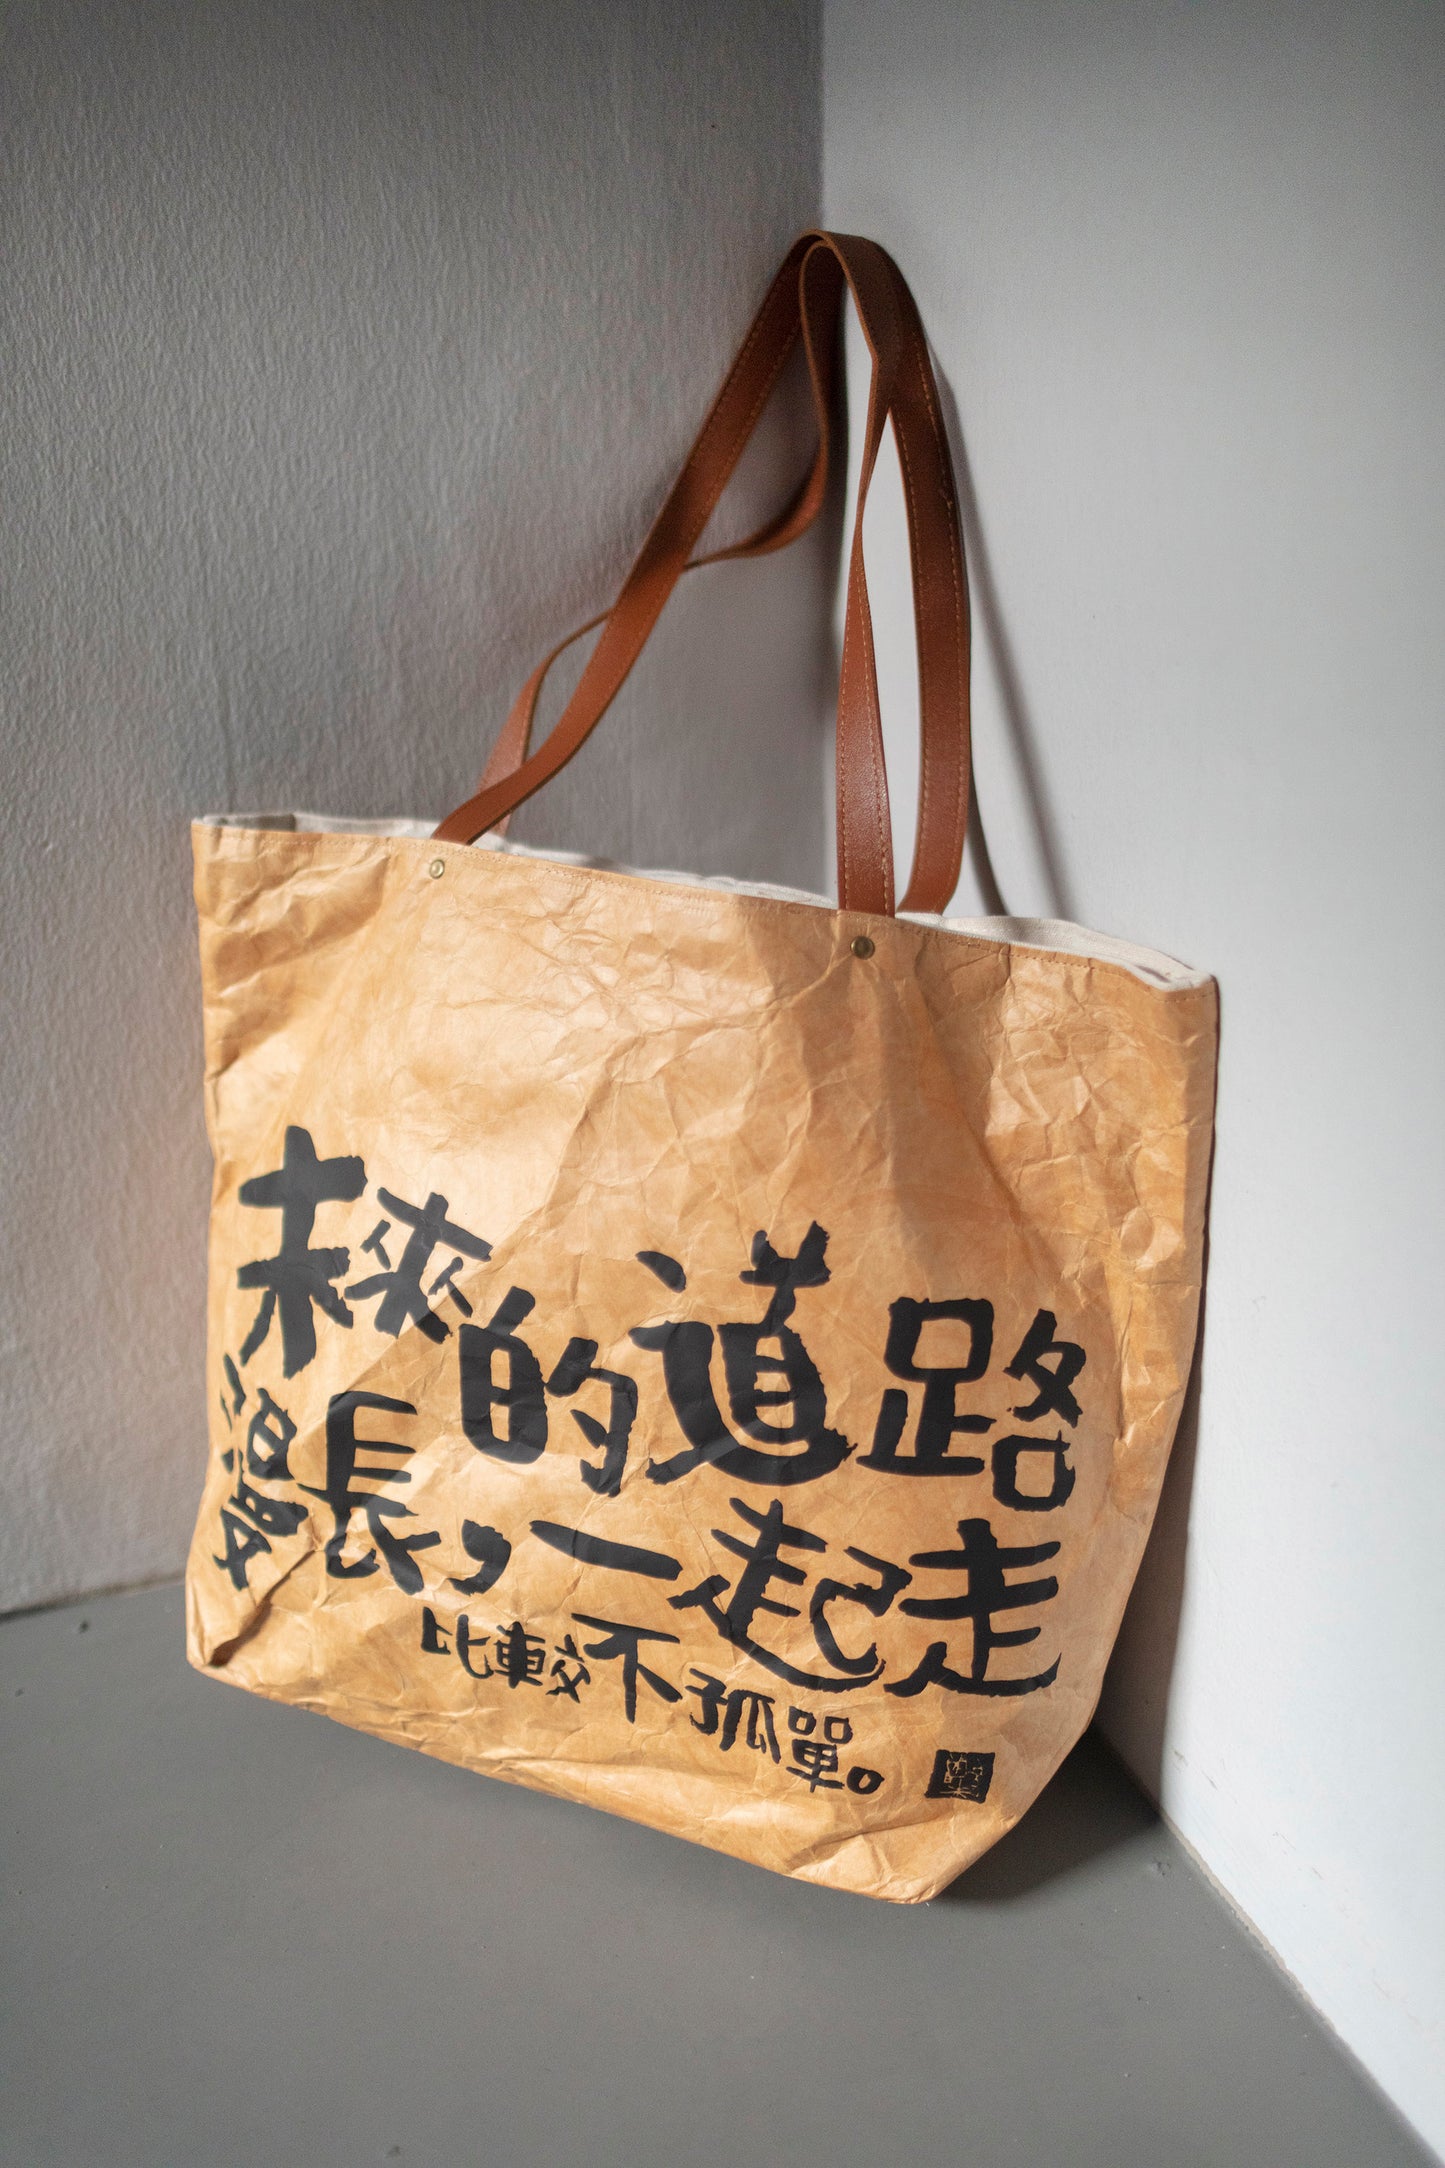 【新货到】道路漫长 手提包 Journey ahead with friends tote bag